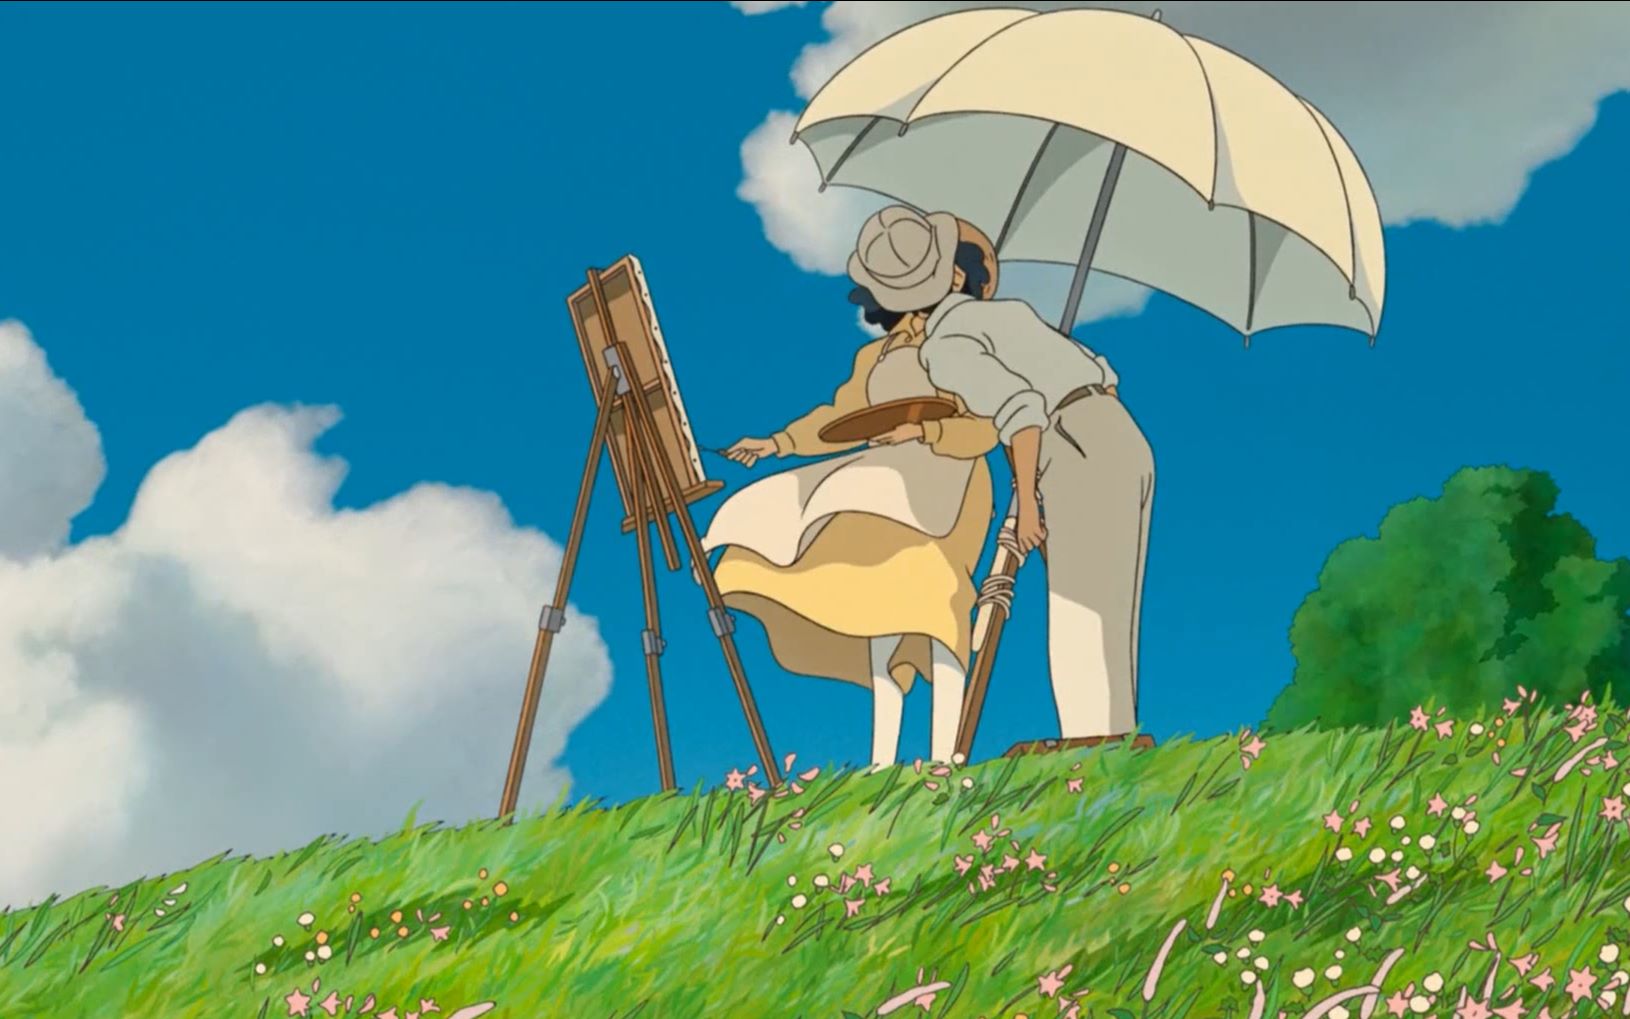 宫崎骏的封山之作,《起风了》:纵有疾风起,人生不言弃